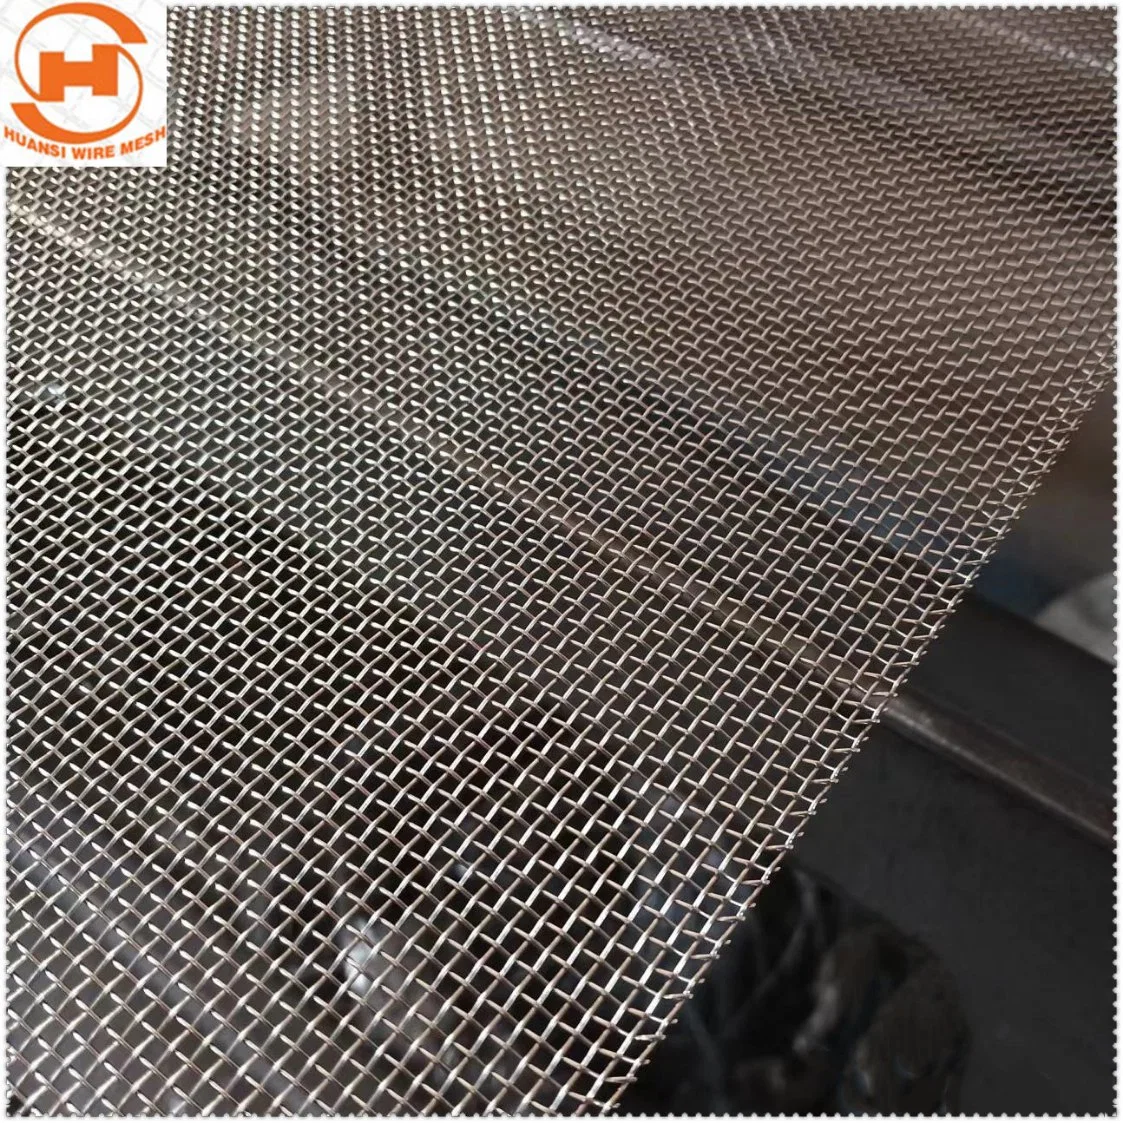 2-3500 Malha de Aço Inoxidável Filtro Metálico de tecidos de malha